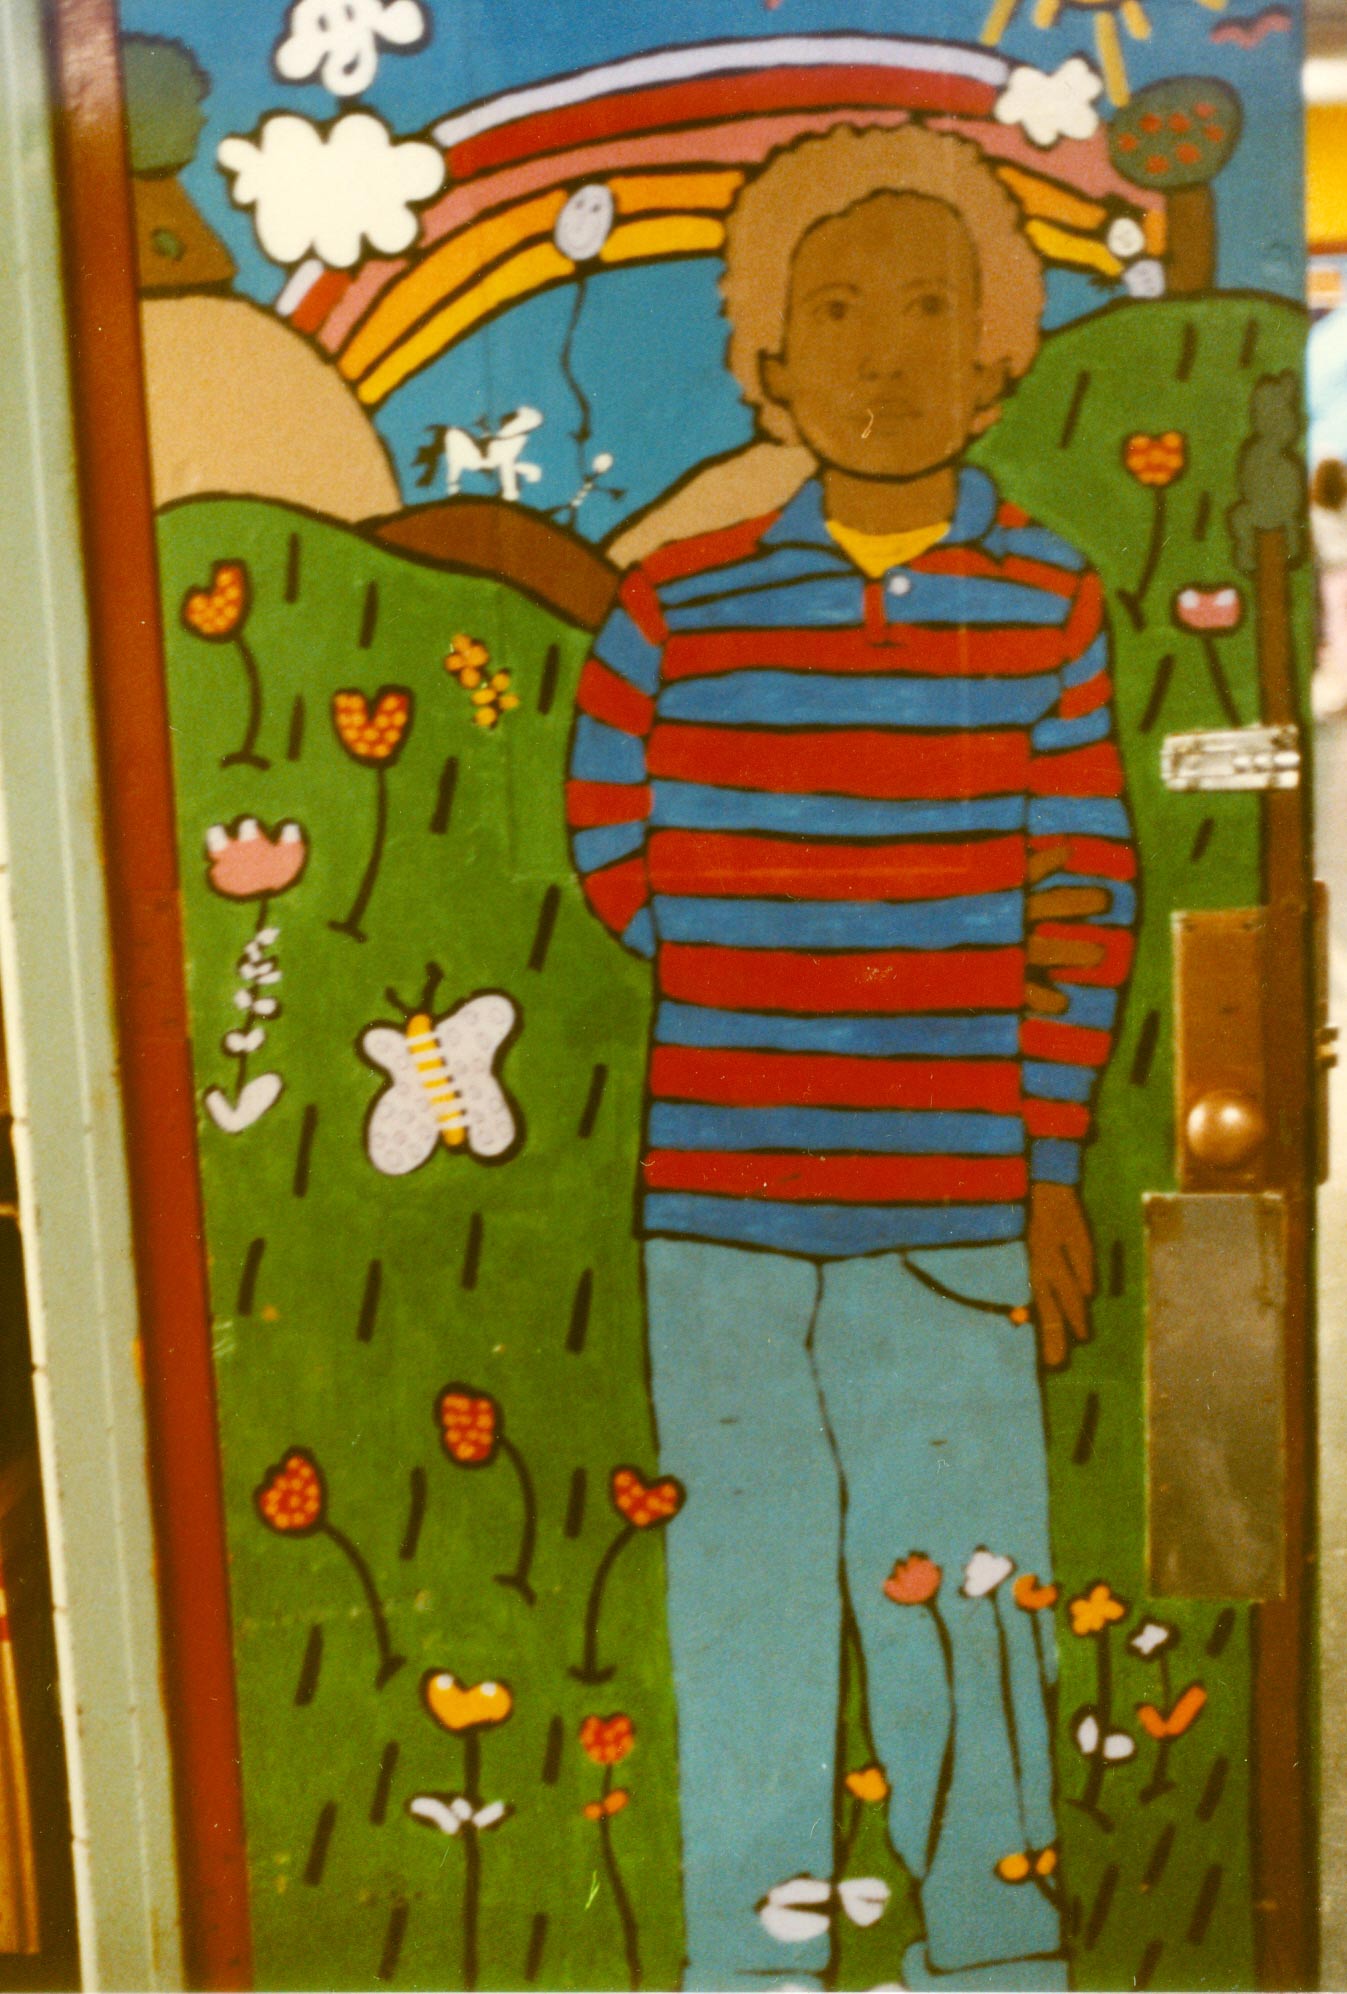 Peter mural at PS87